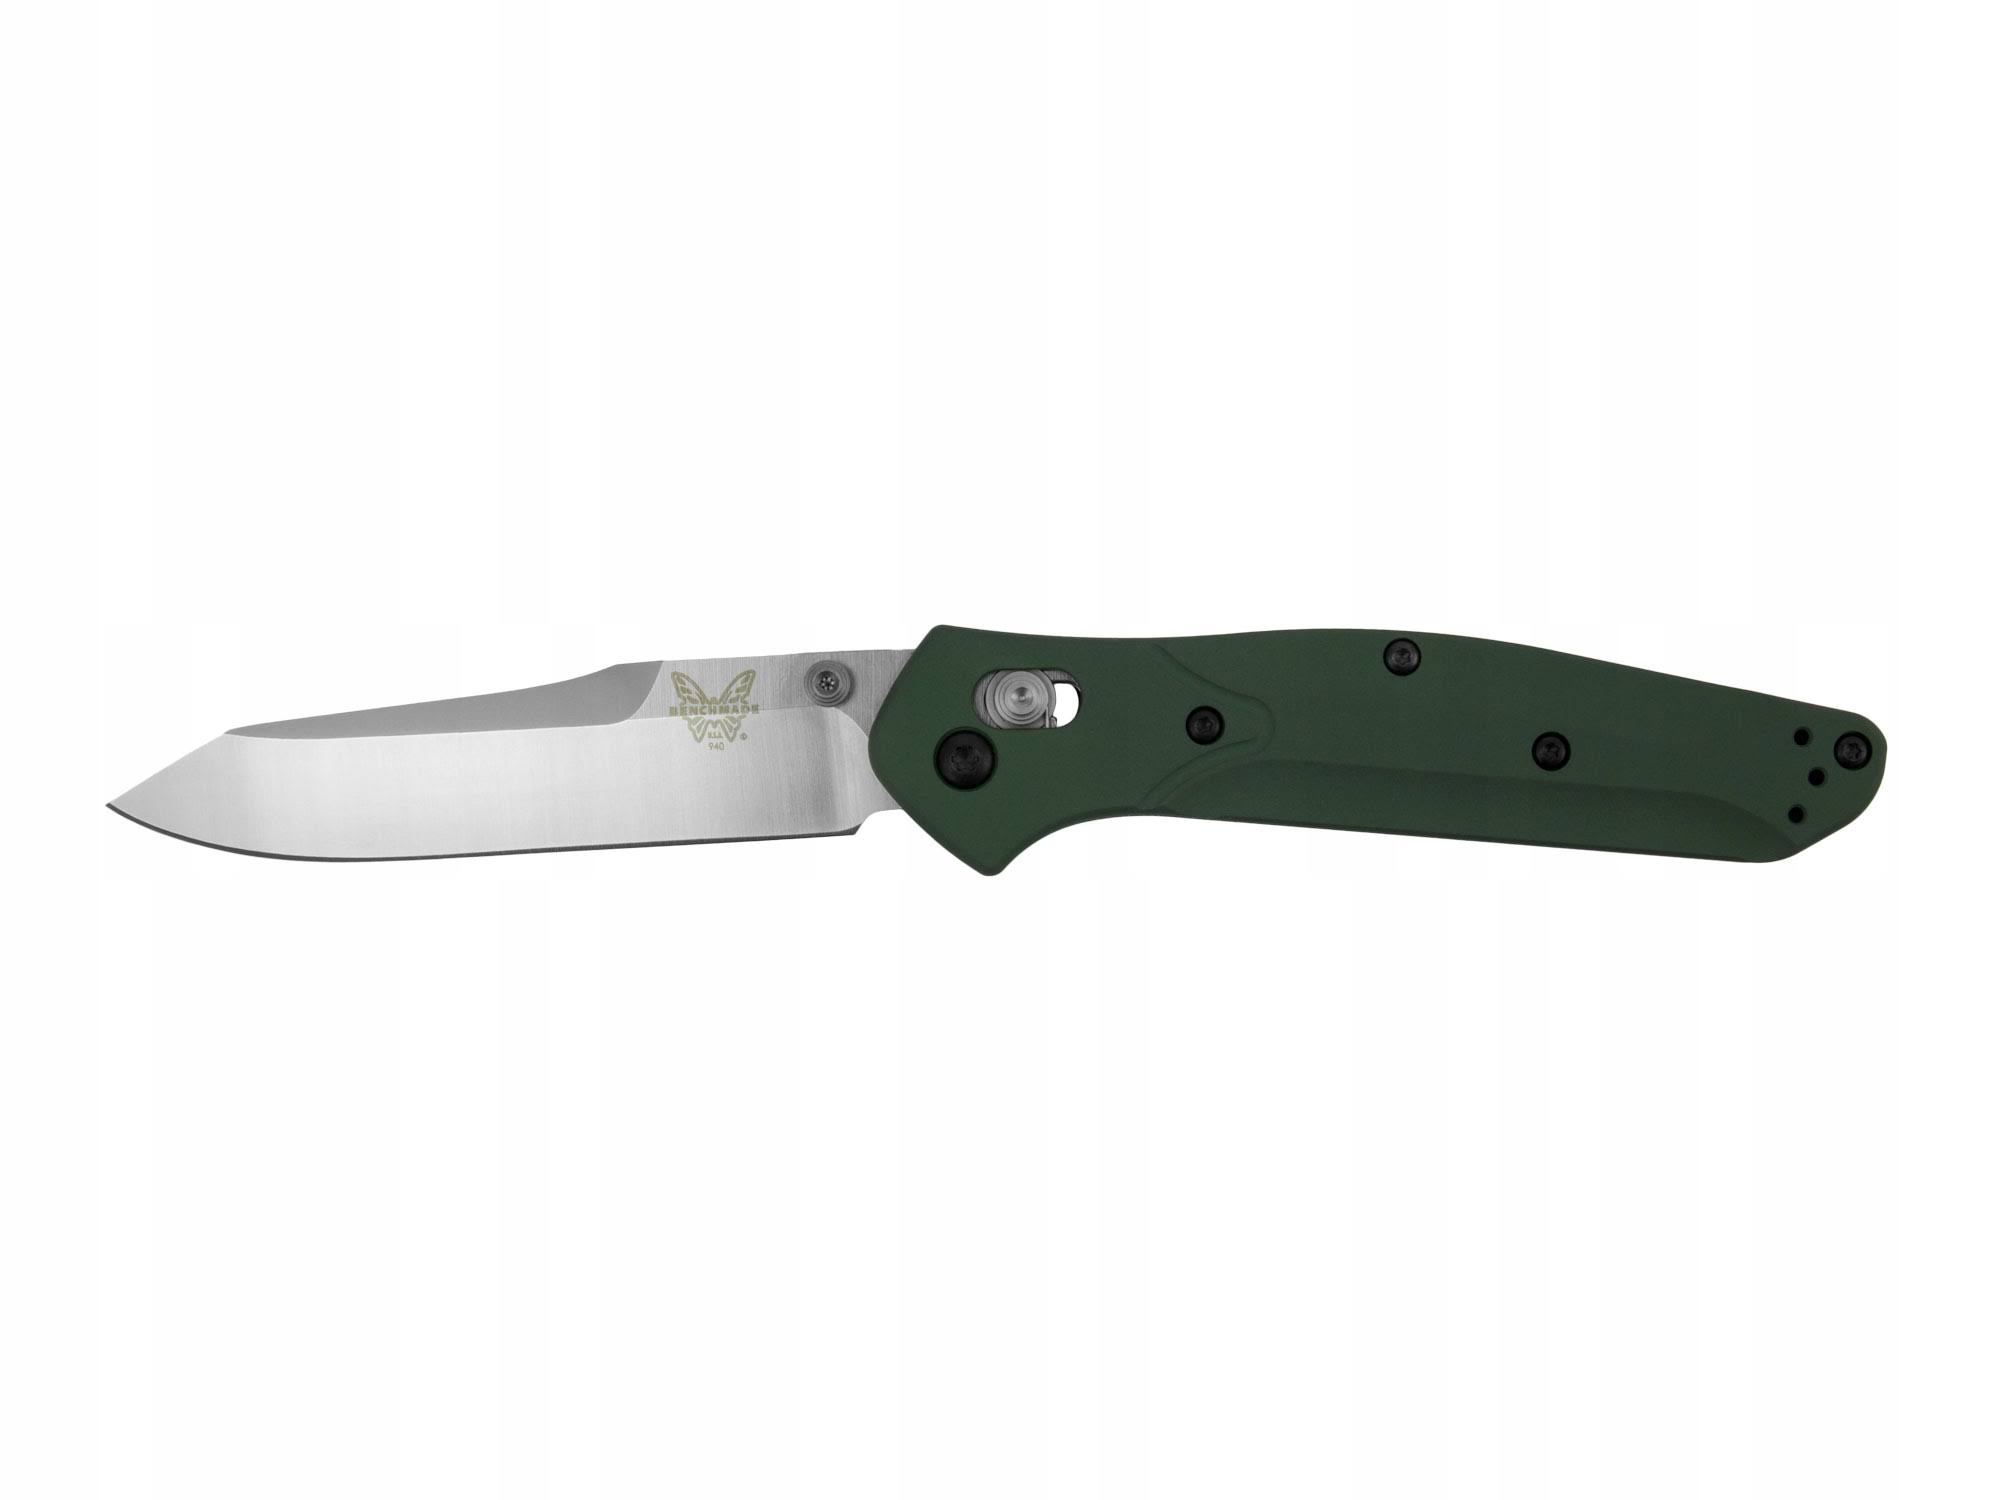 Benchmade 940 Osborne Design Knife